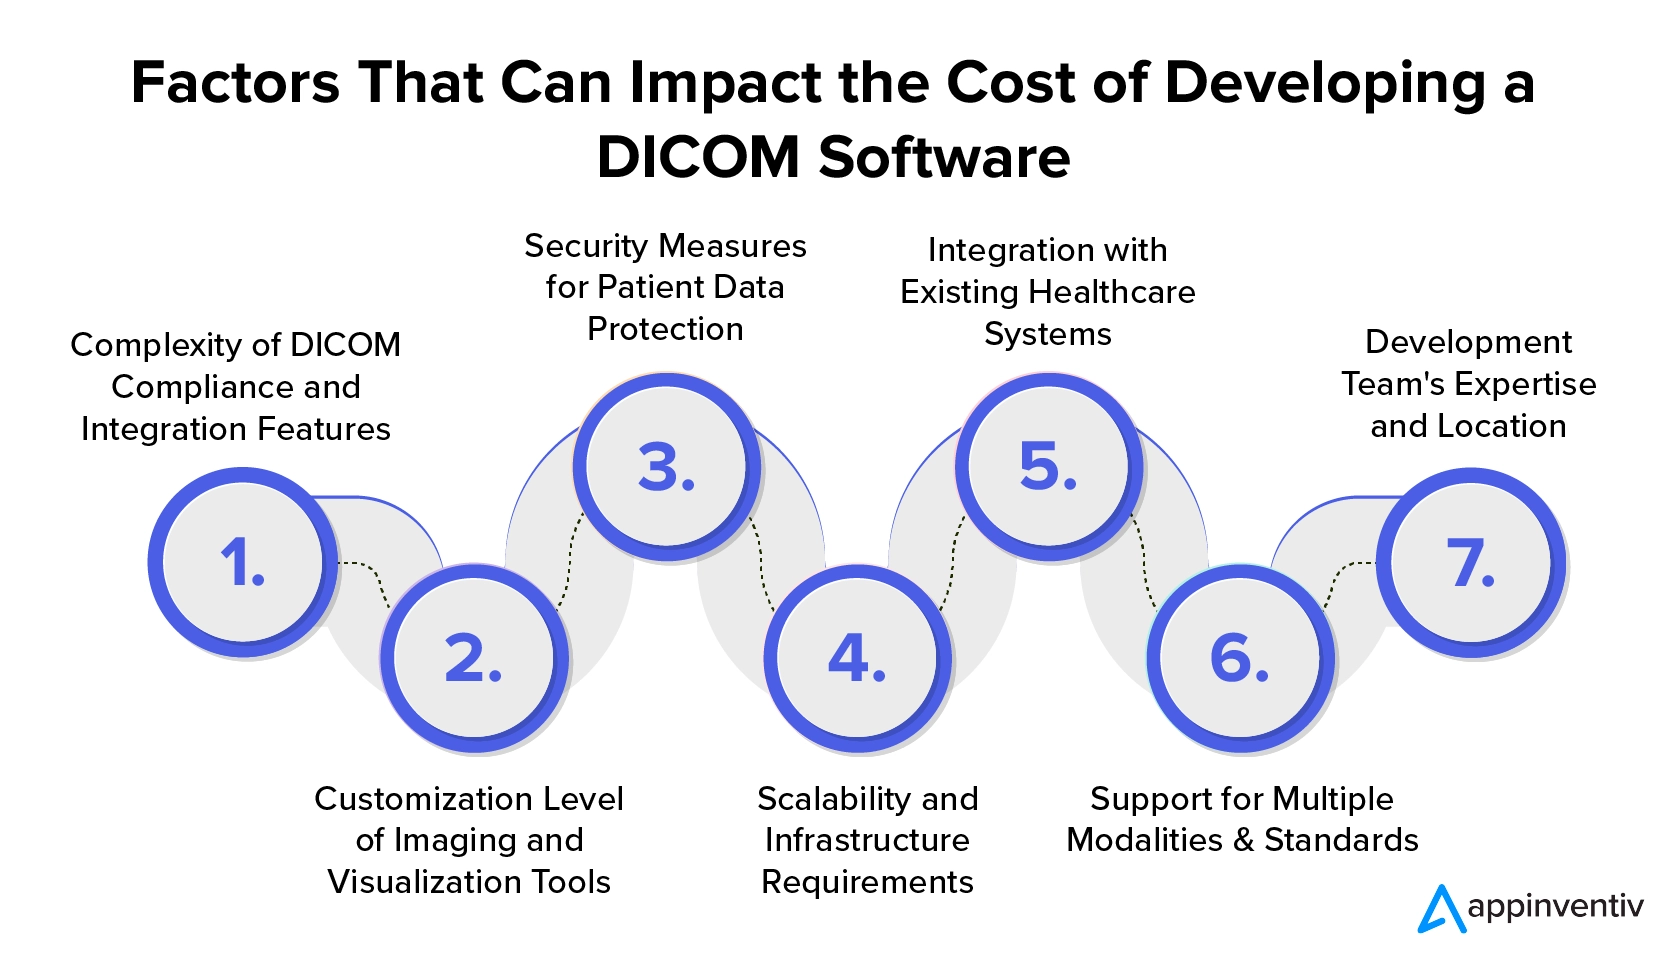 Fatores que podem impactar o custo de desenvolvimento de um software DICOM